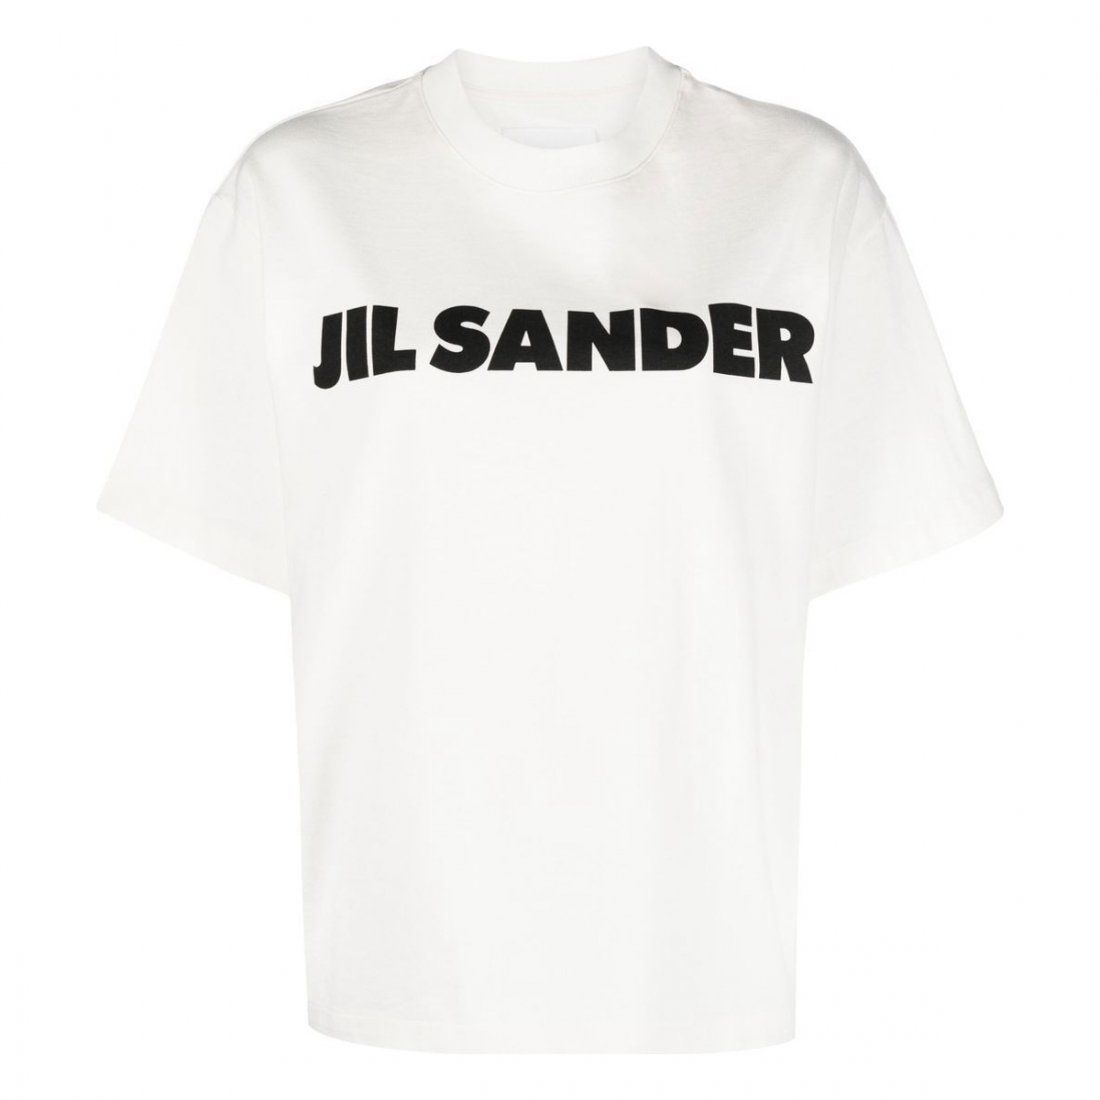 Jil Sander - T-shirt pour Femmes